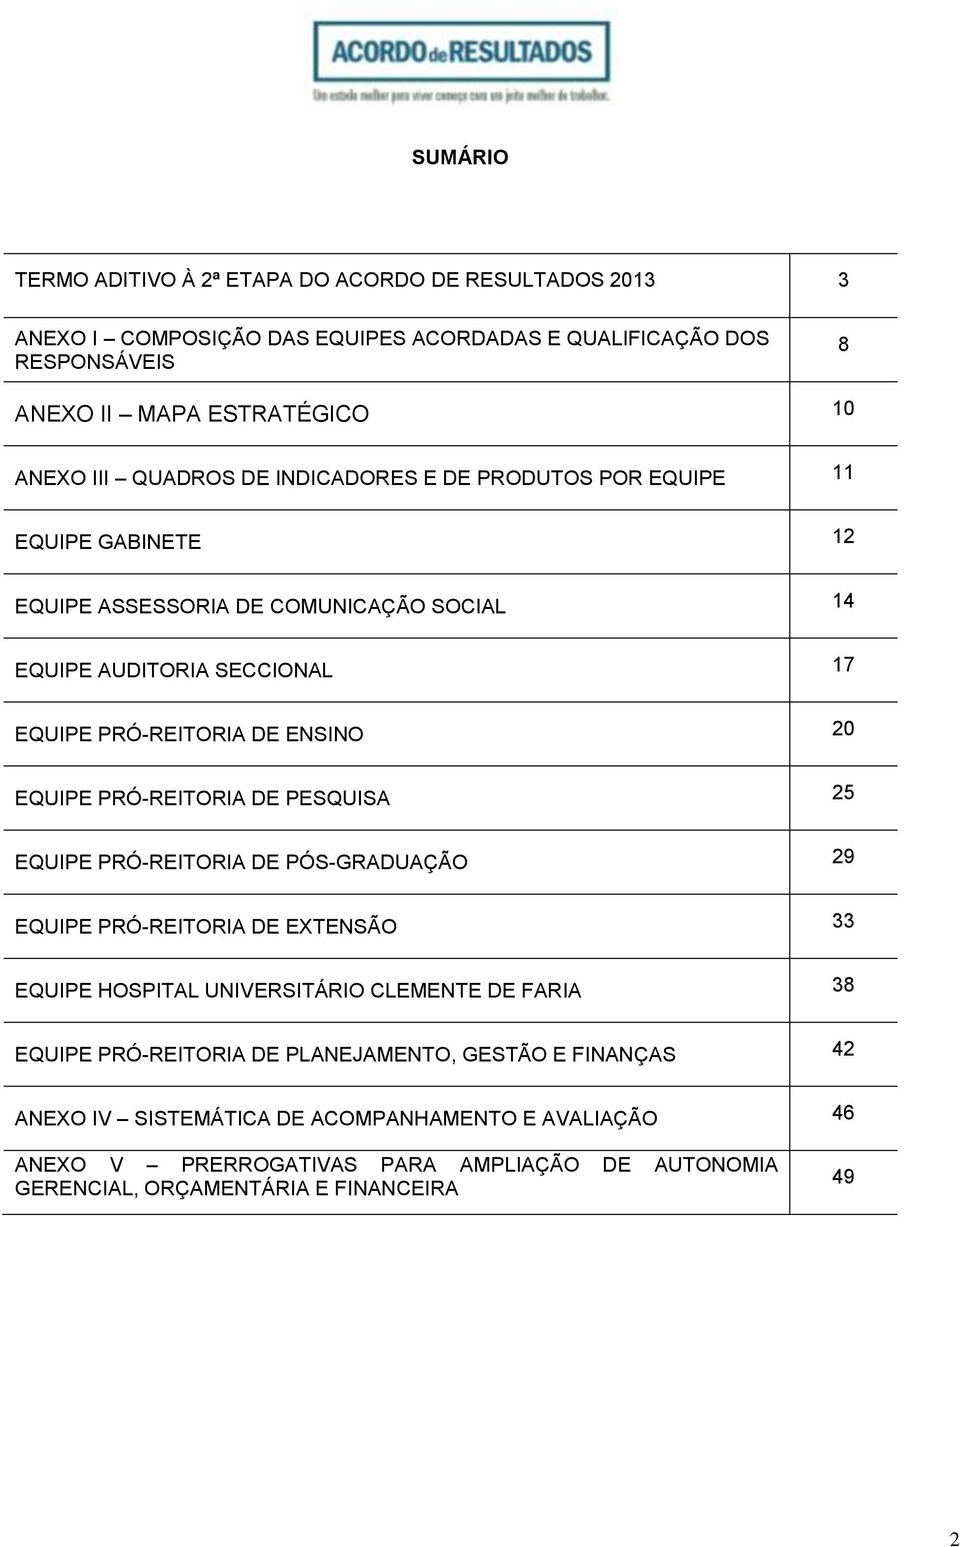 EQUIPE PRÓ-REITORIA DE PESQUISA 25 EQUIPE PRÓ-REITORIA DE PÓS-GRADUAÇÃO 29 EQUIPE PRÓ-REITORIA DE EXTENSÃO 33 EQUIPE HOSPITAL UNIVERSITÁRIO CLEMENTE DE FARIA 38 EQUIPE